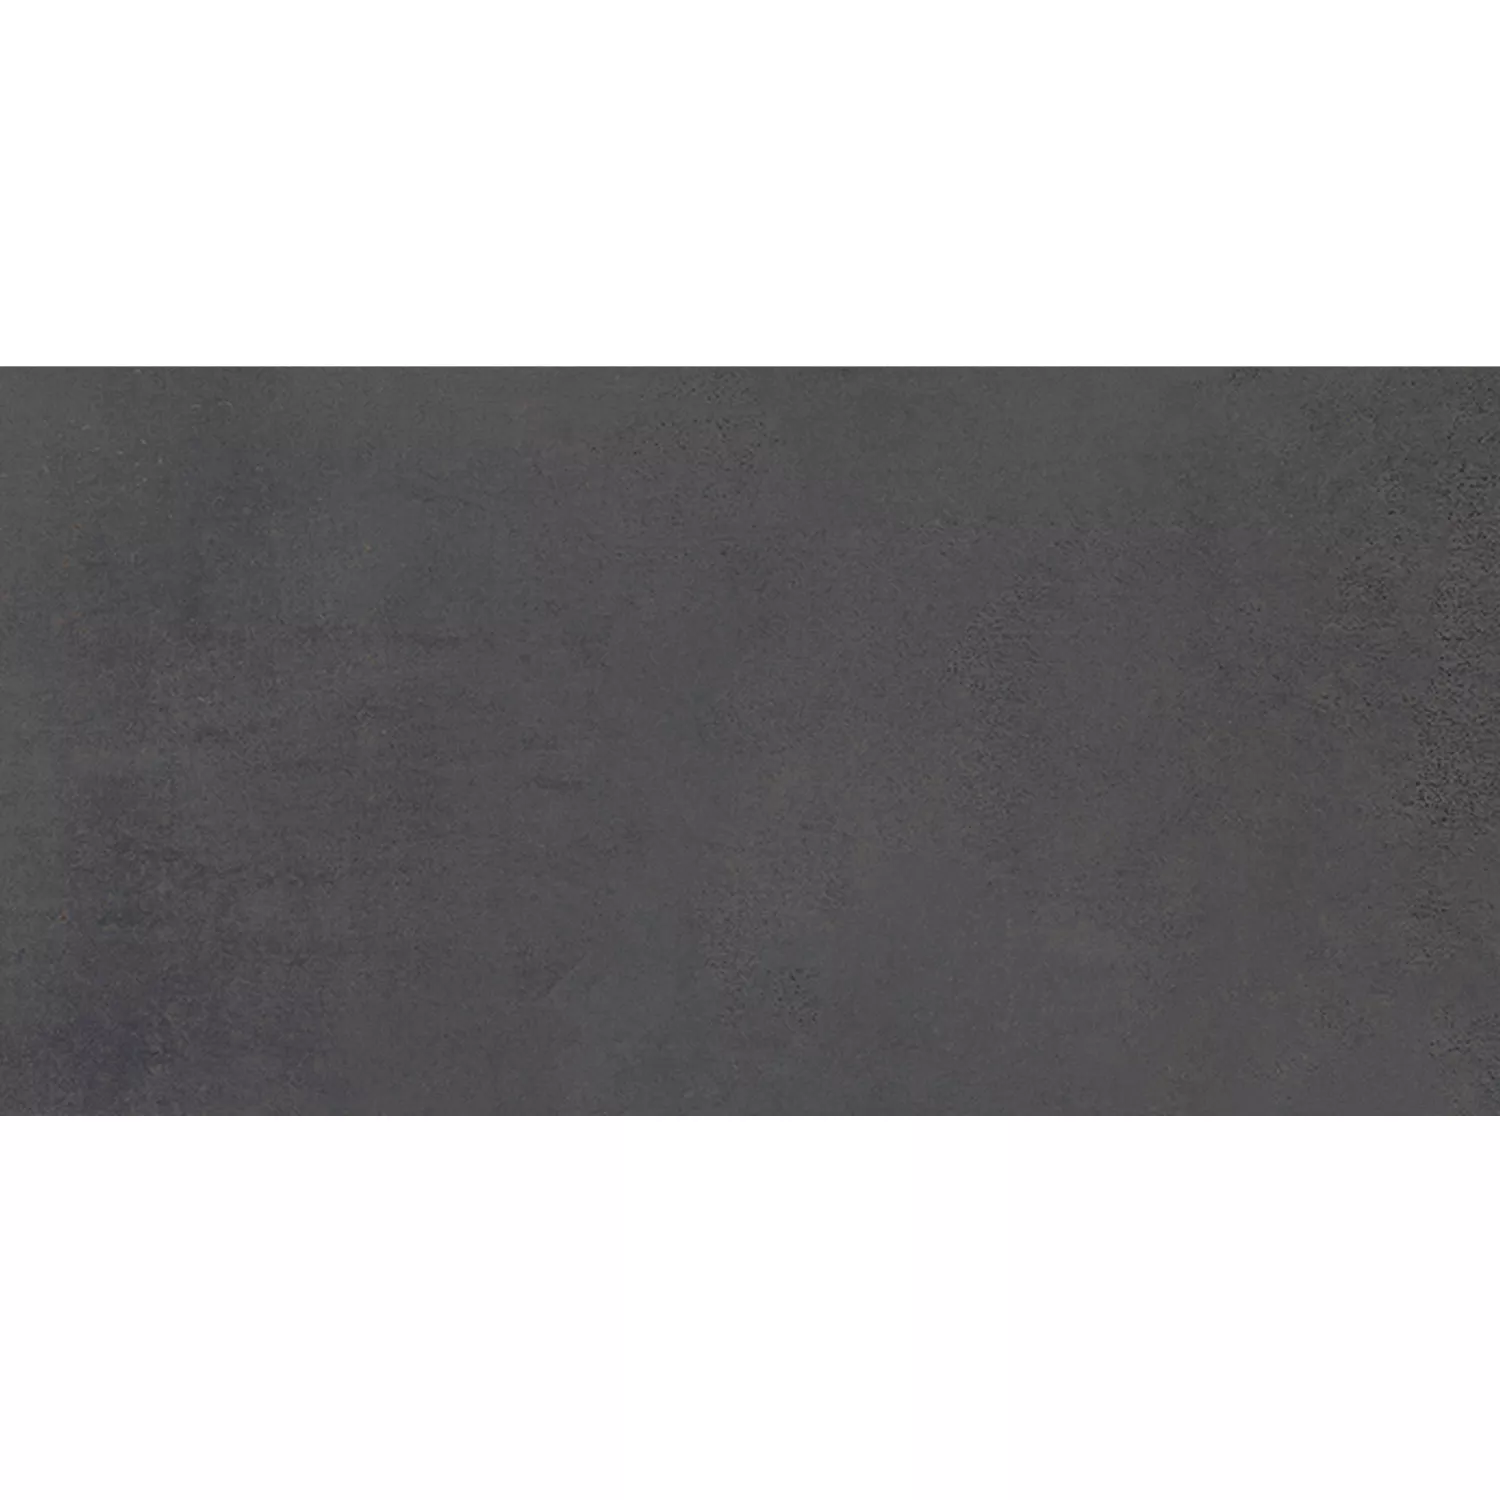 Πρότυπο Πλακάκια Δαπέδου Tycoon Συγκεκριμένη Εμφάνιση R10 Ανθρακίτης 30x60cm